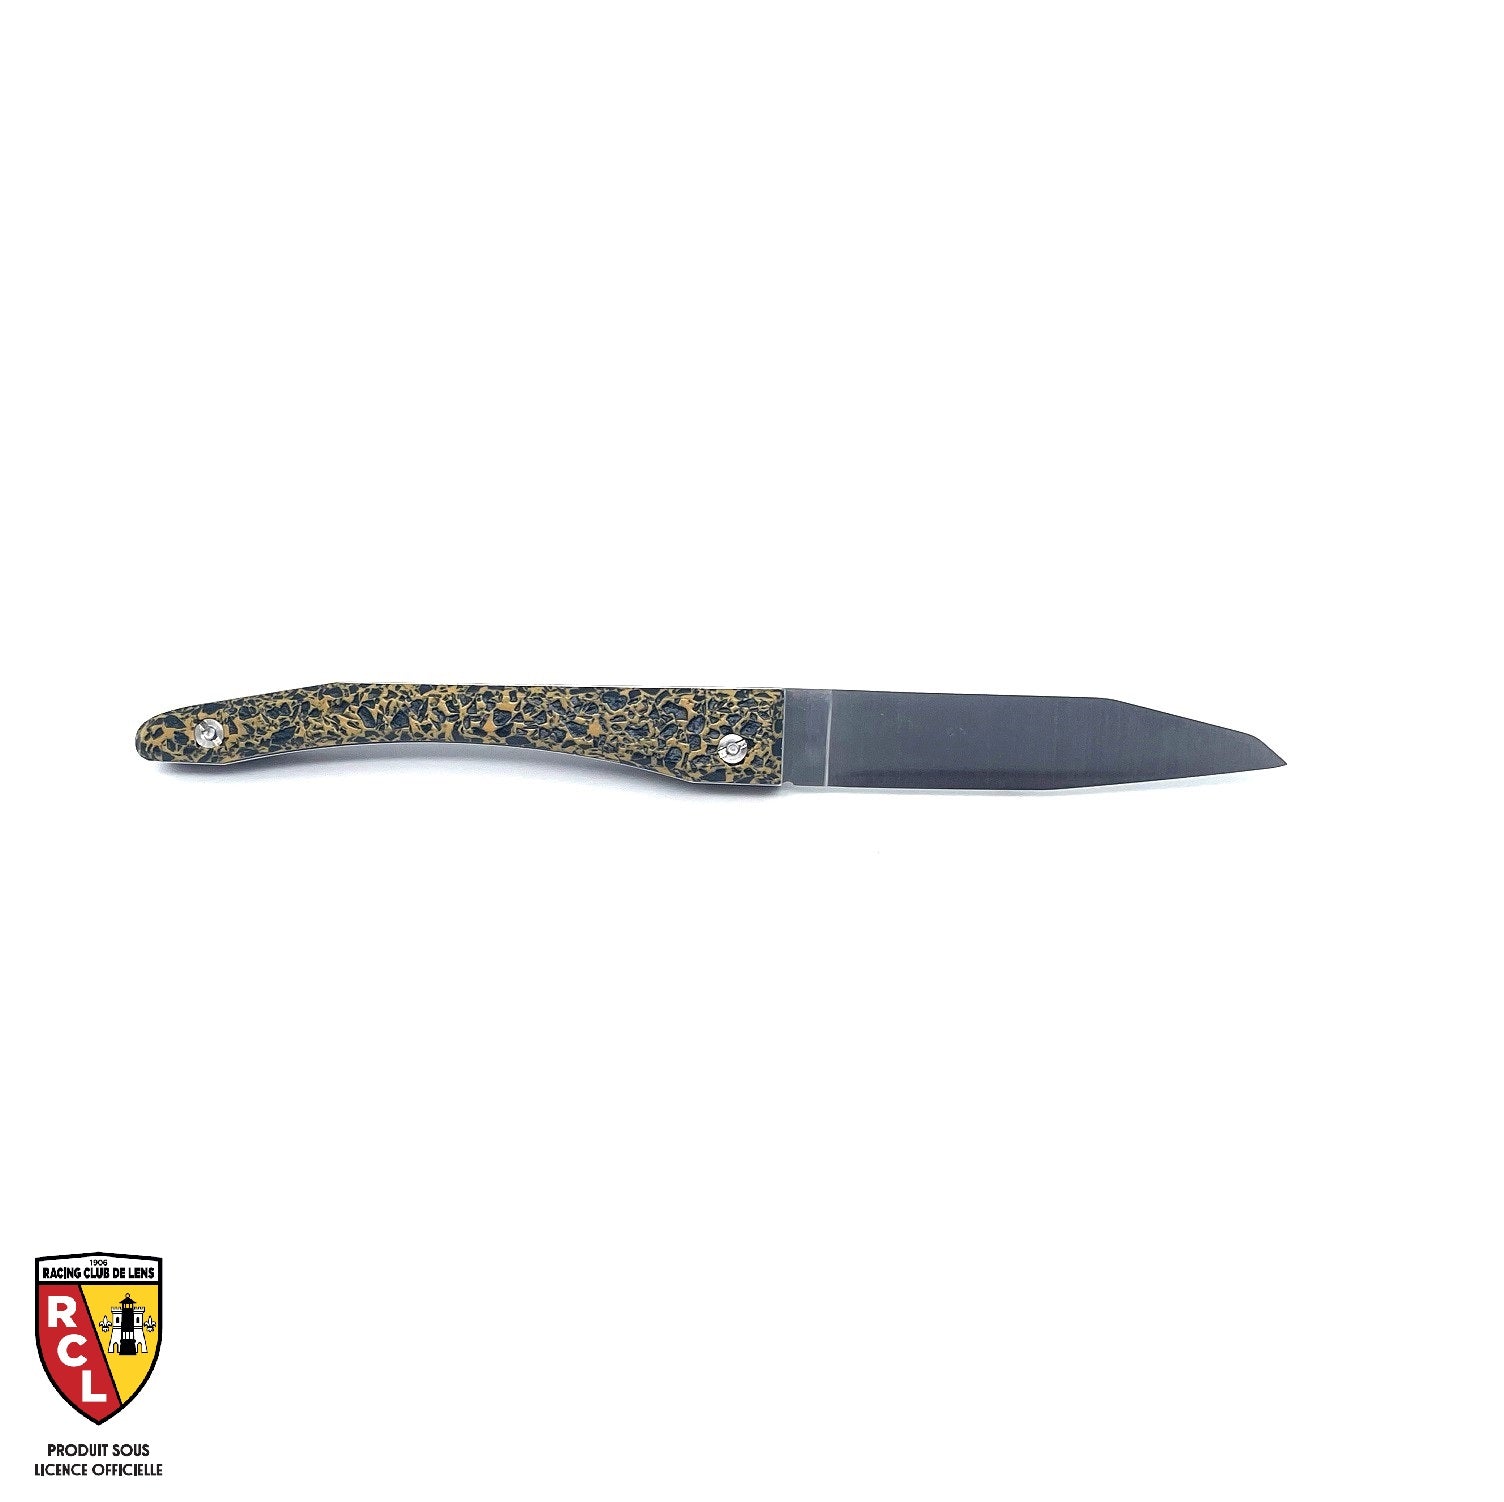 Piemontesisches RC LENS-Messer mit BLUT- und GOLD-Holzkohlegriff (UNTER OFFIZIELLER LIZENZ)